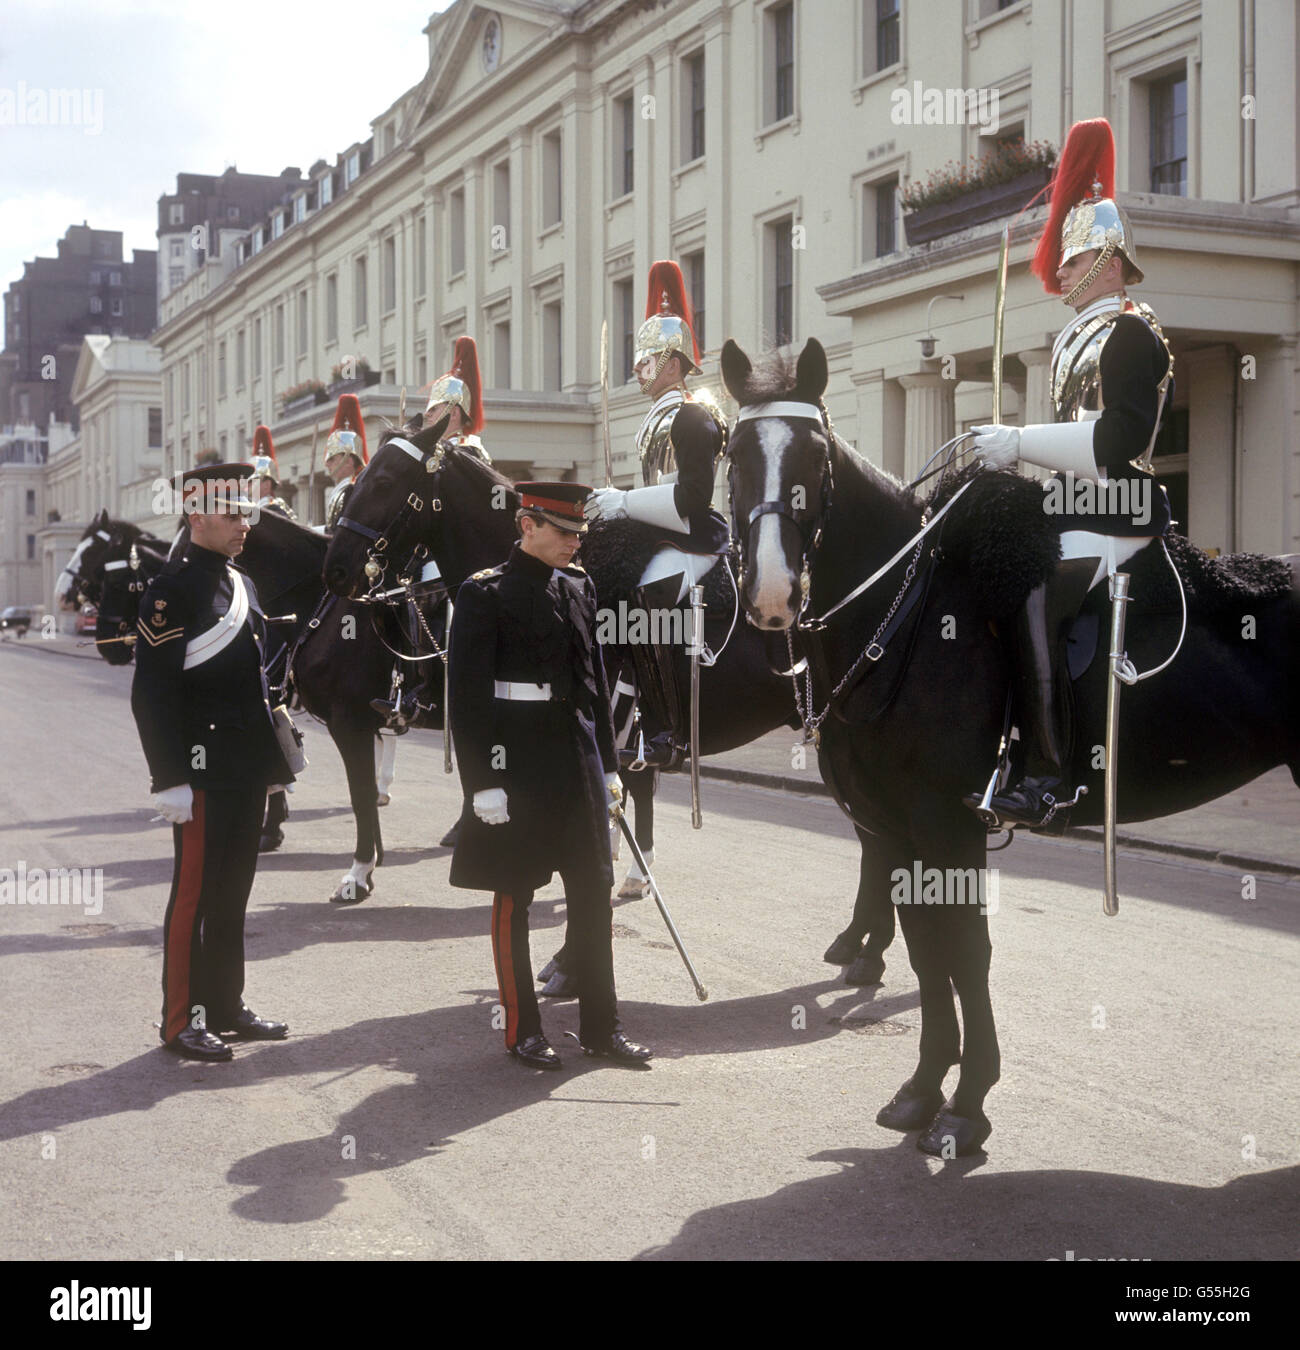 Image - Household Cavalry Division - la caserne Wellington, Londres Banque D'Images